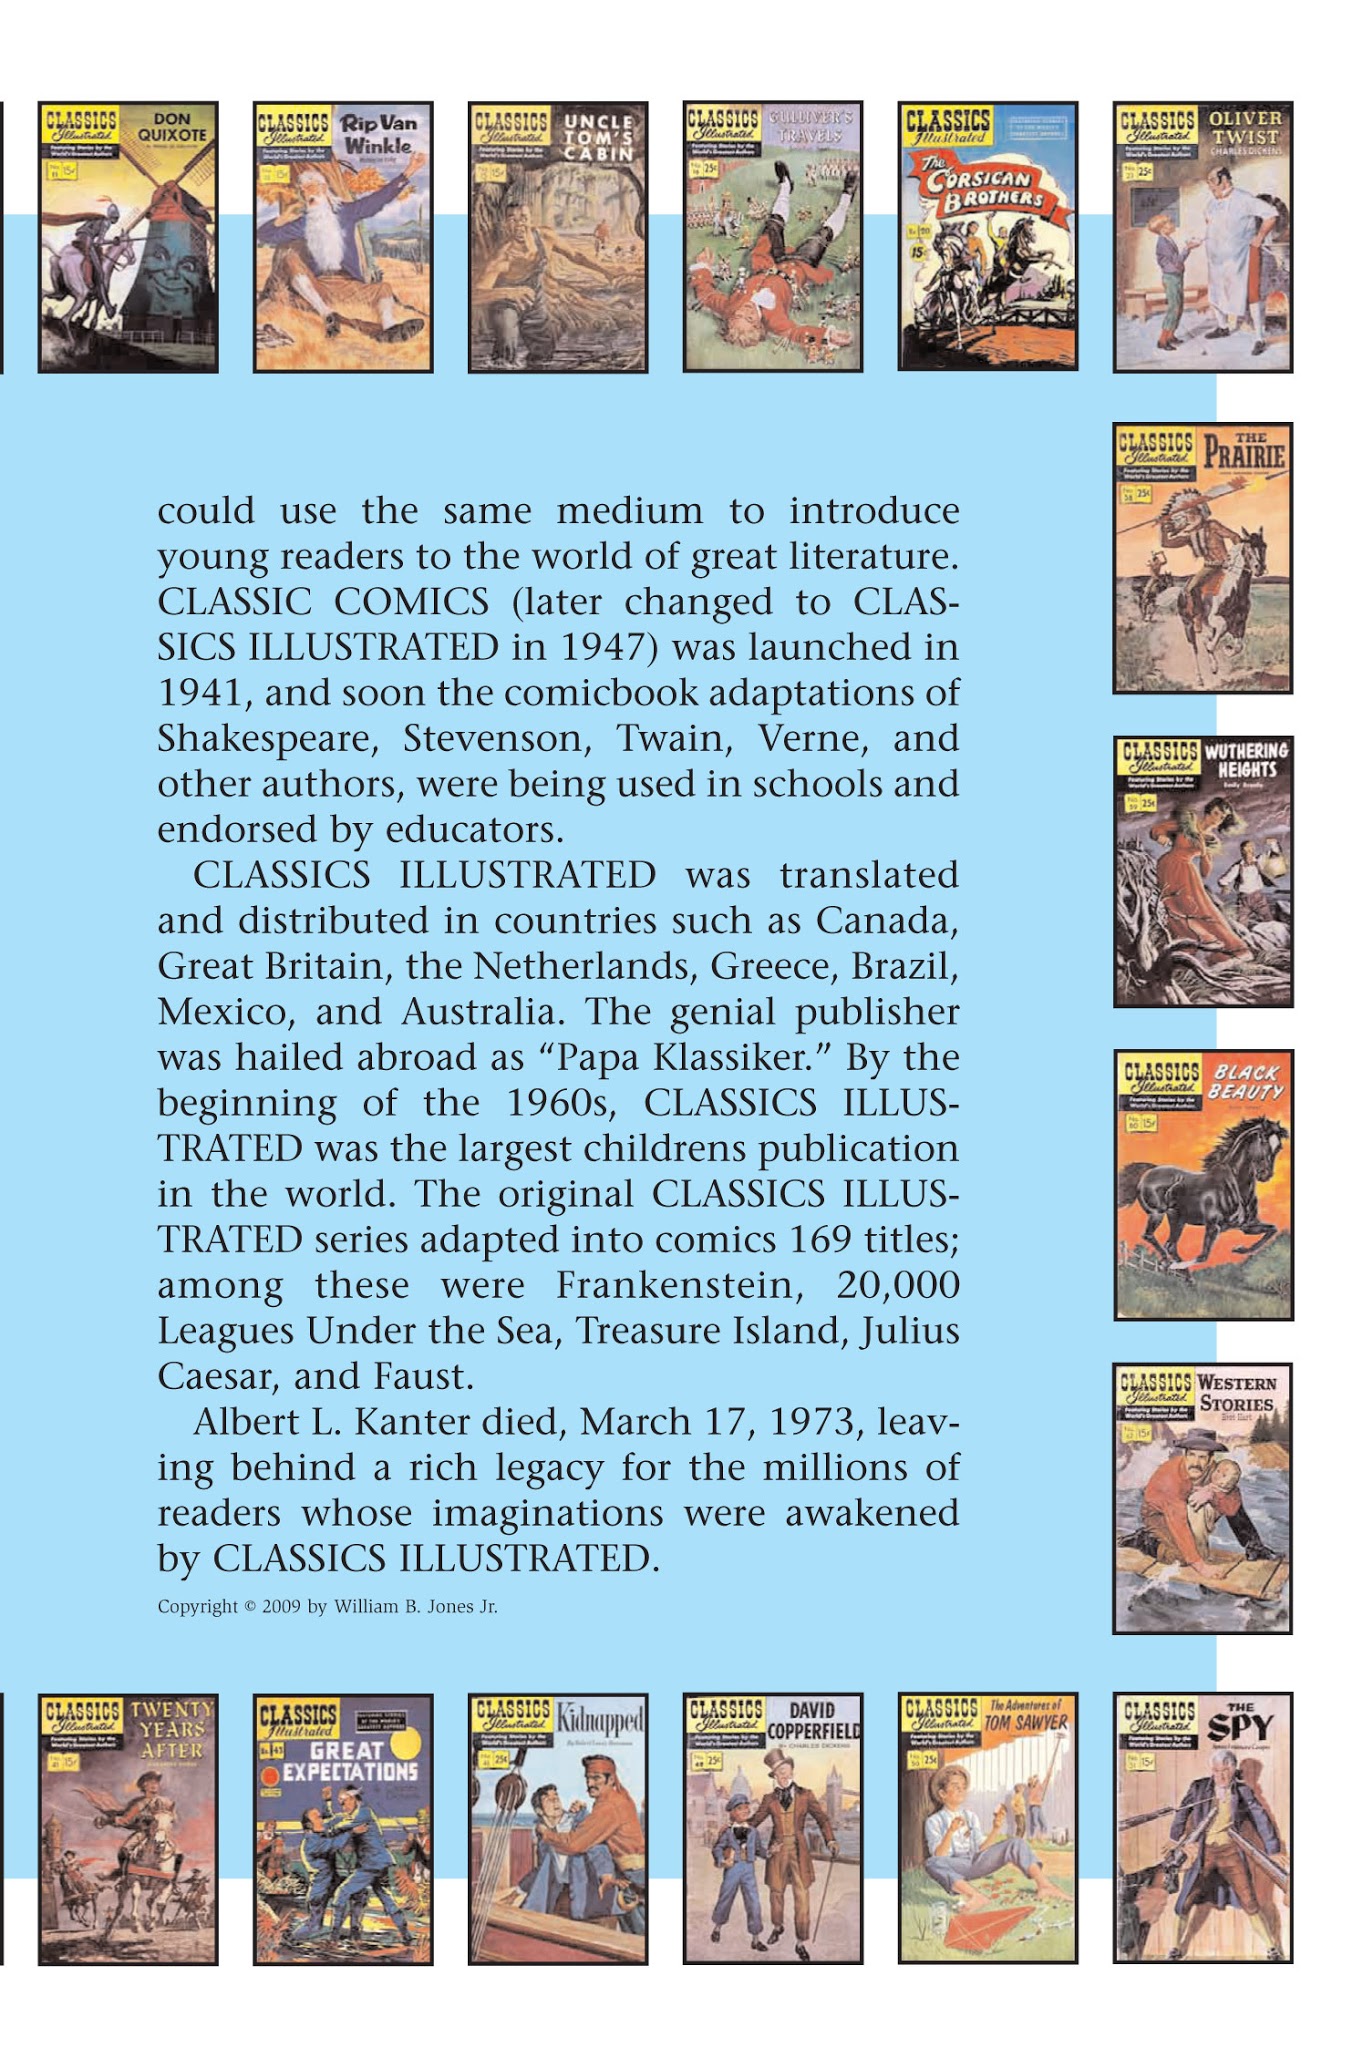 Read online Nancy Drew comic -  Issue #17 - 90